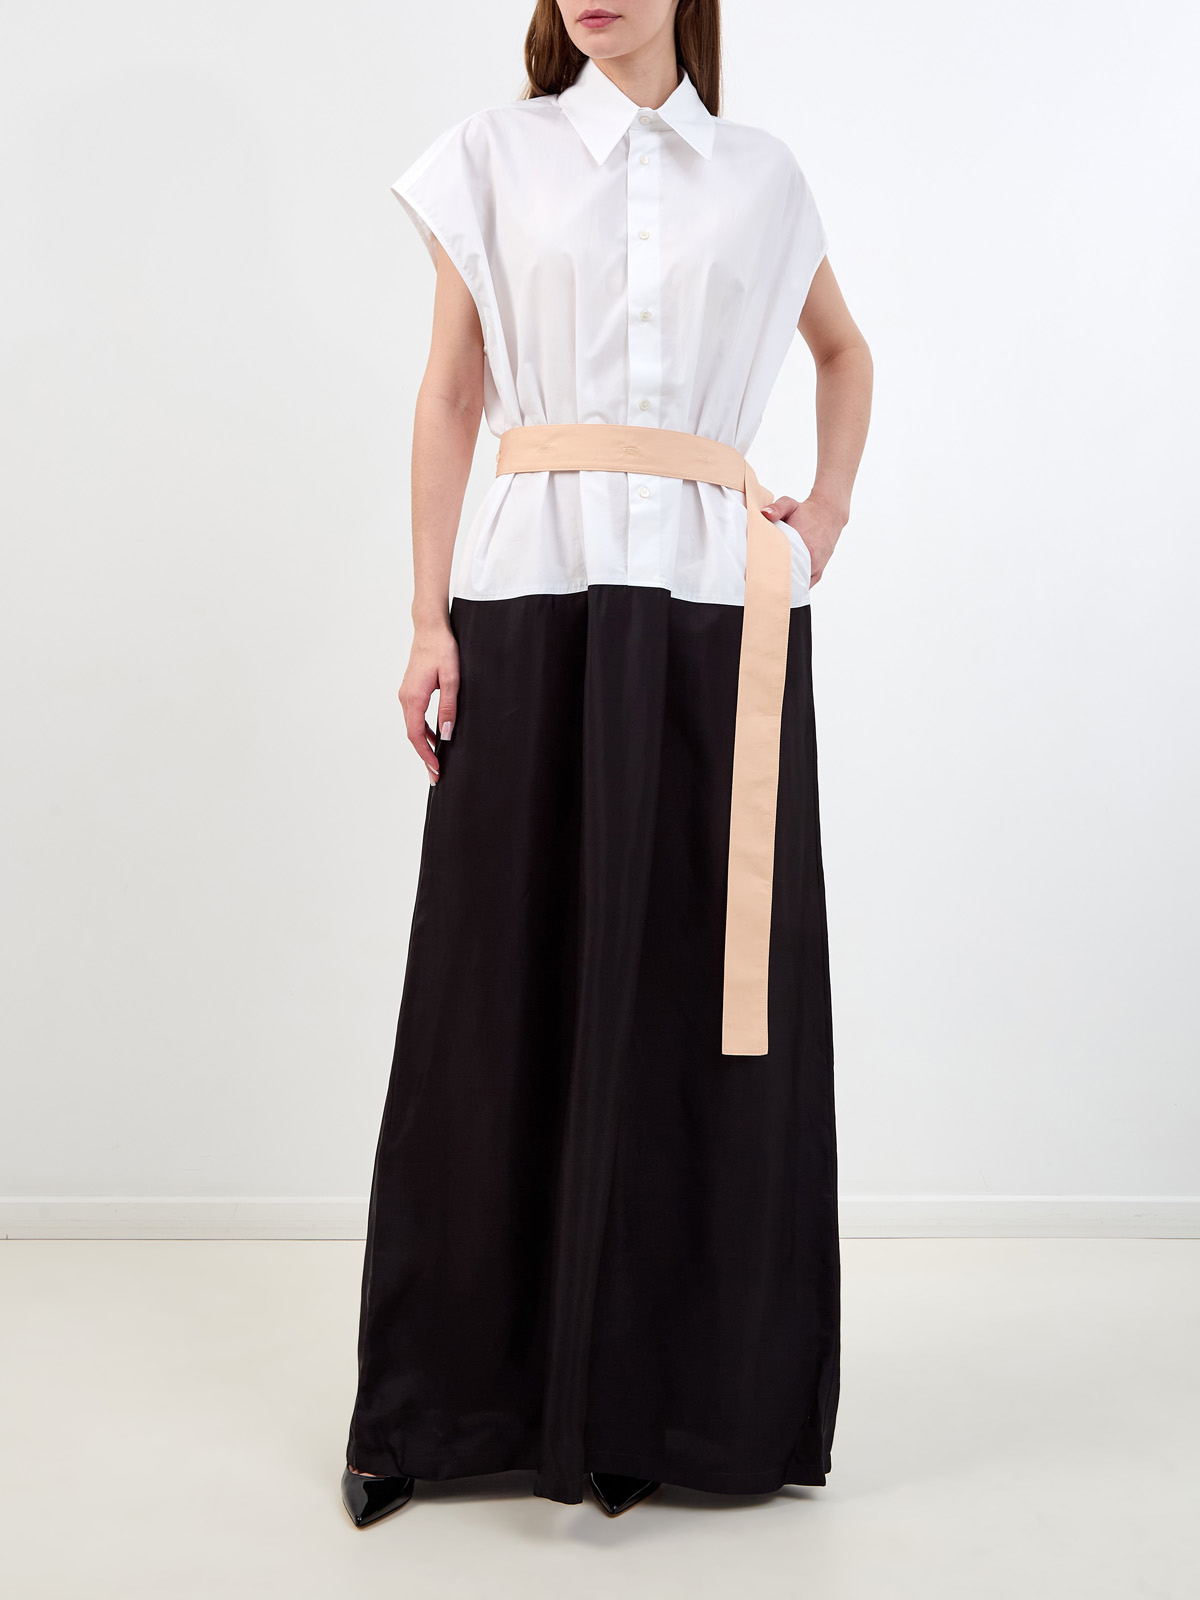 Хлопковое платье-рубашка в стиле colorblock с контрастным поясом FABIANA FILIPPI, цвет мульти, размер 40;42 - фото 2